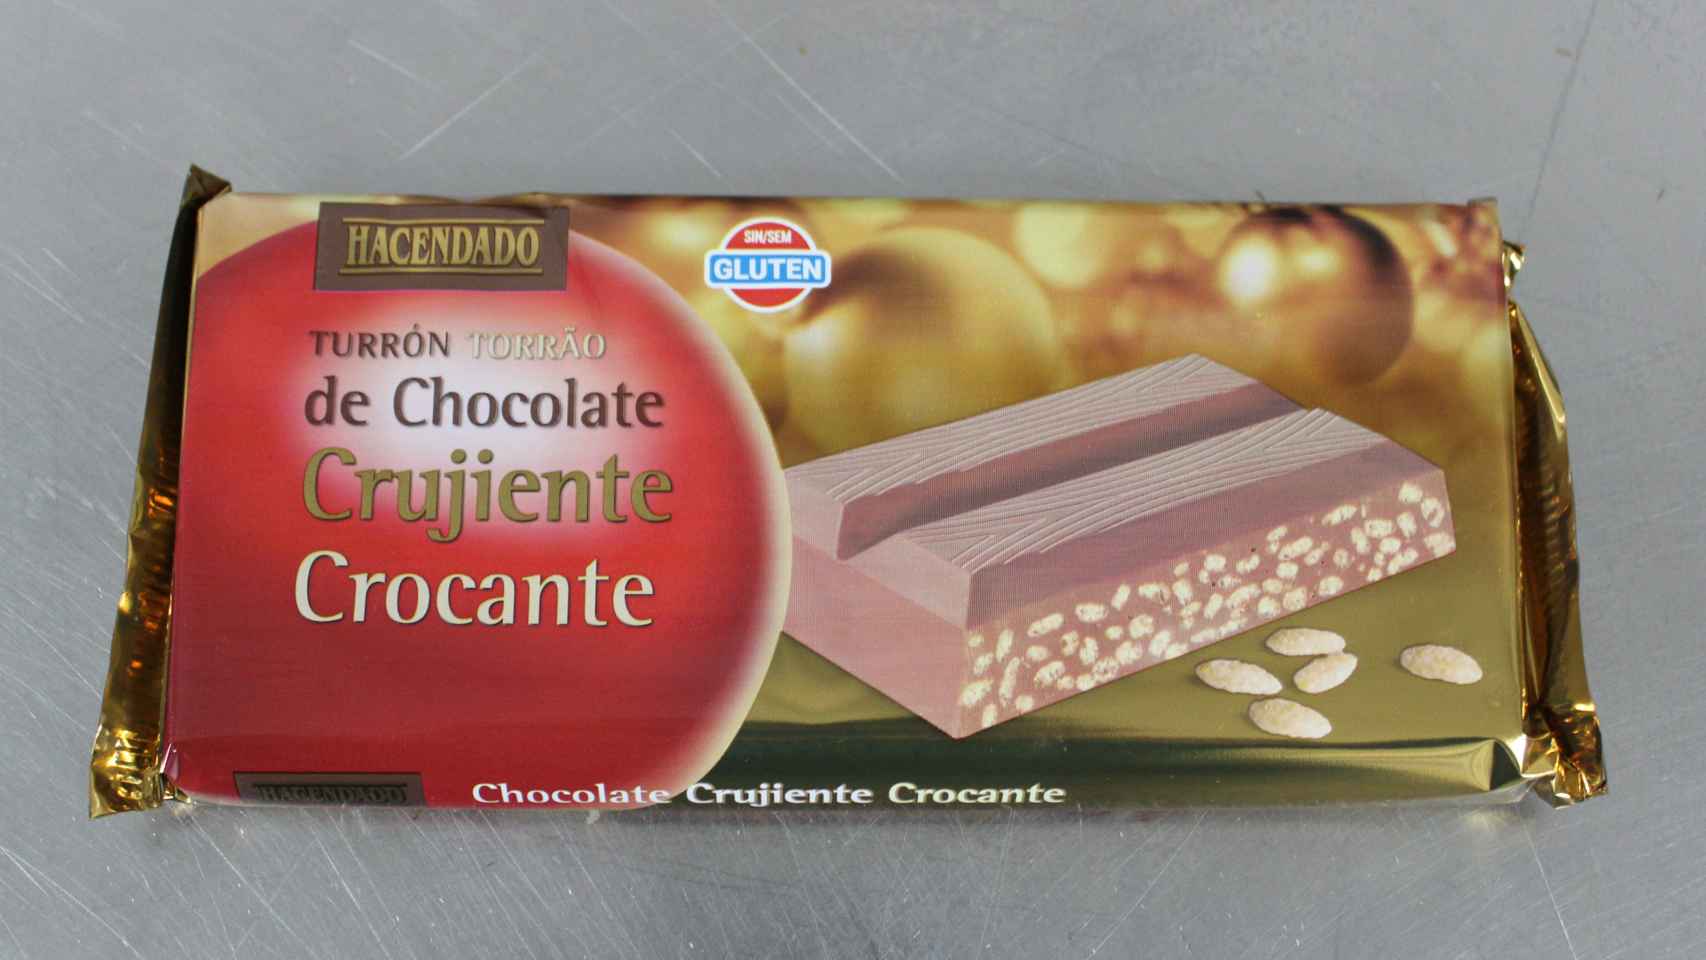 El turrón crujiente de chocolate de Hacendado, la marca blanca de Mercadona.